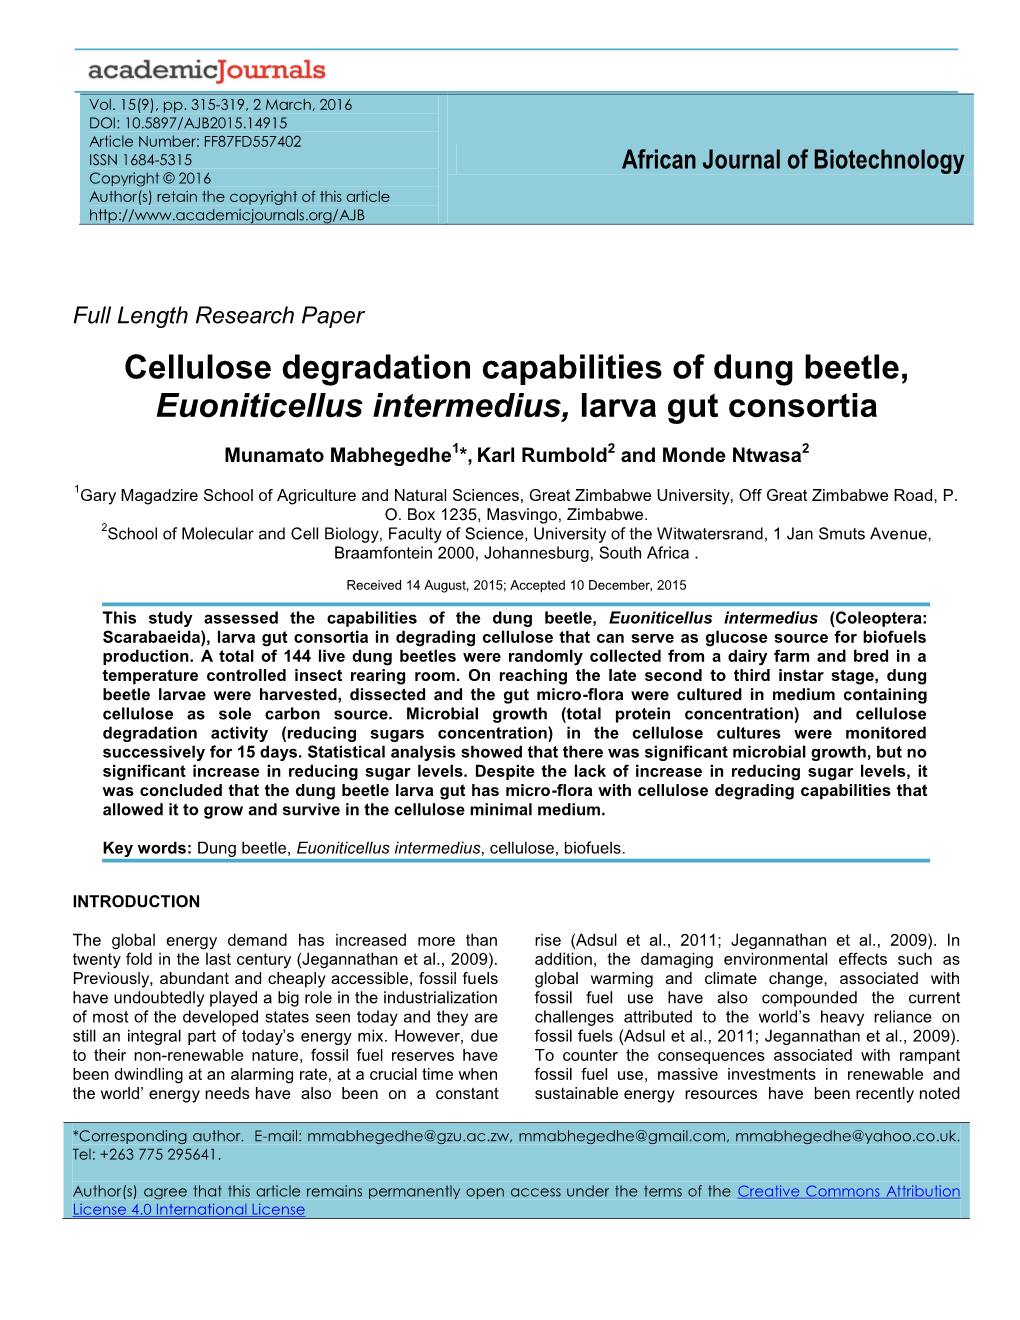 Cellulose Degradation Capabilities of Dung Beetle, Euoniticellus Intermedius, Larva Gut Consortia